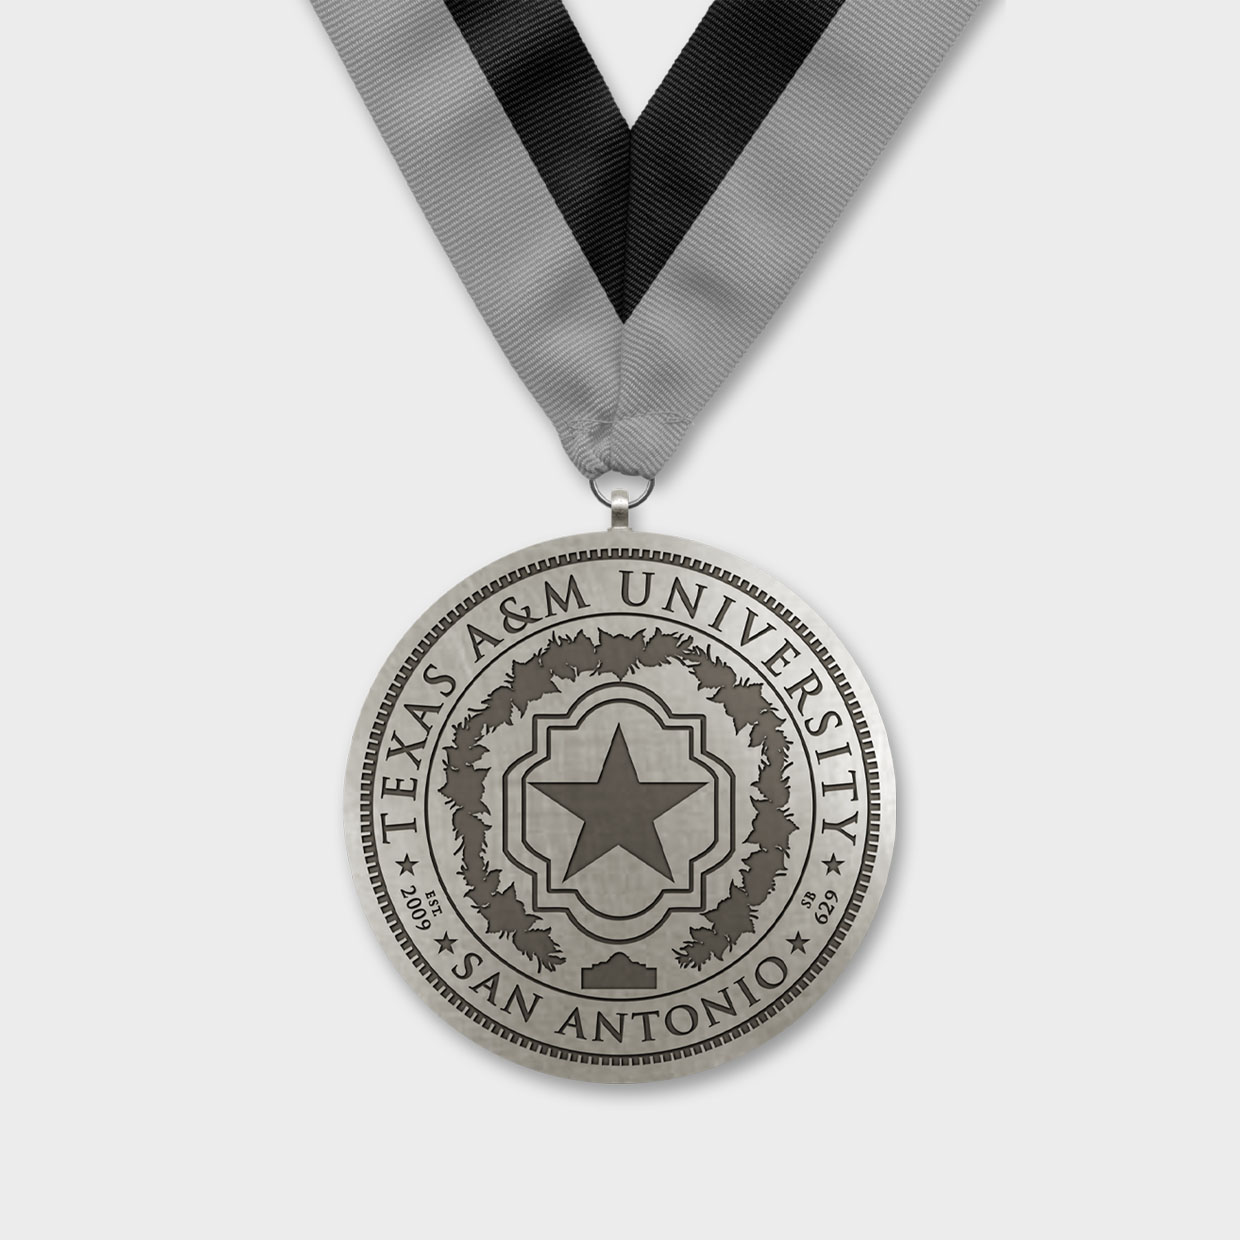 Texas A&M Unversity Medal Obverse